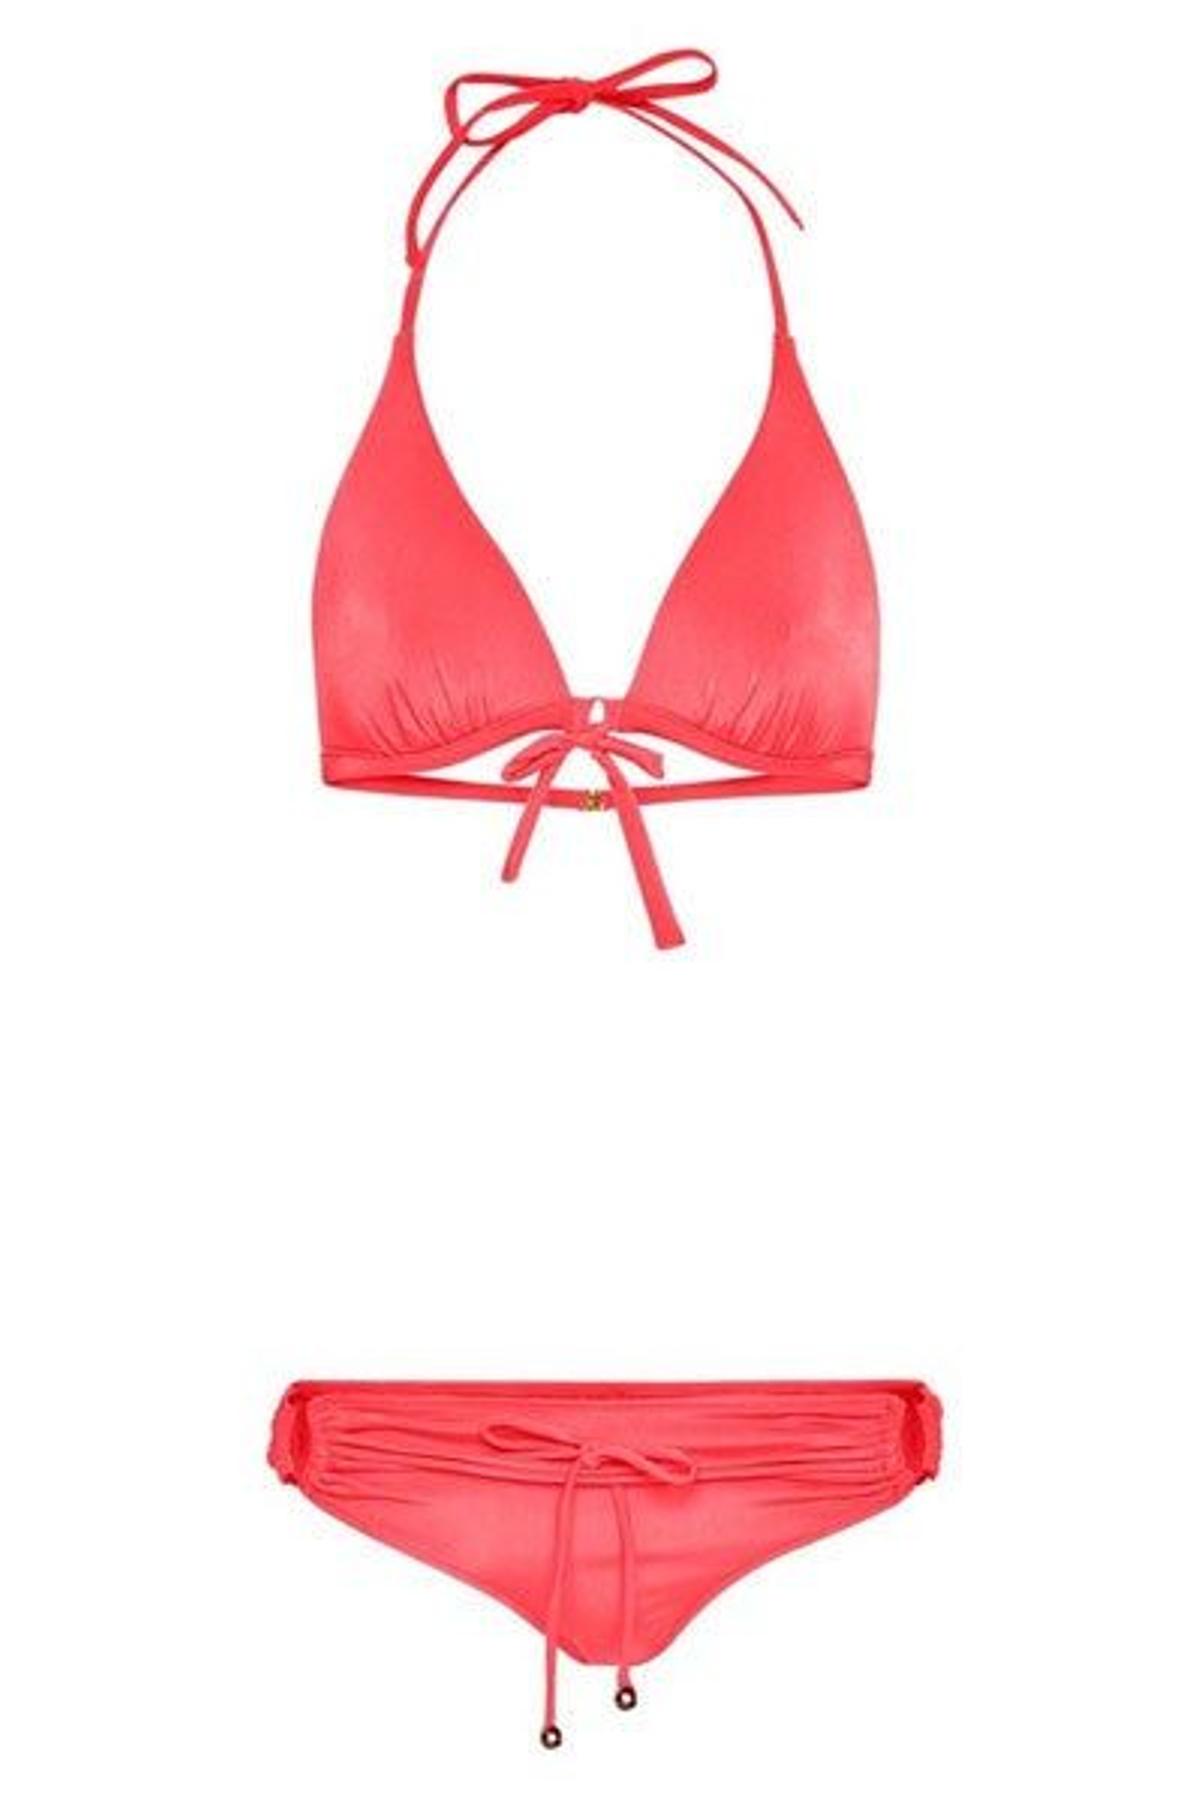 MANGO Bikini color coral de la colección de Guillermina Baeza para Mango para la primavera de 2012.